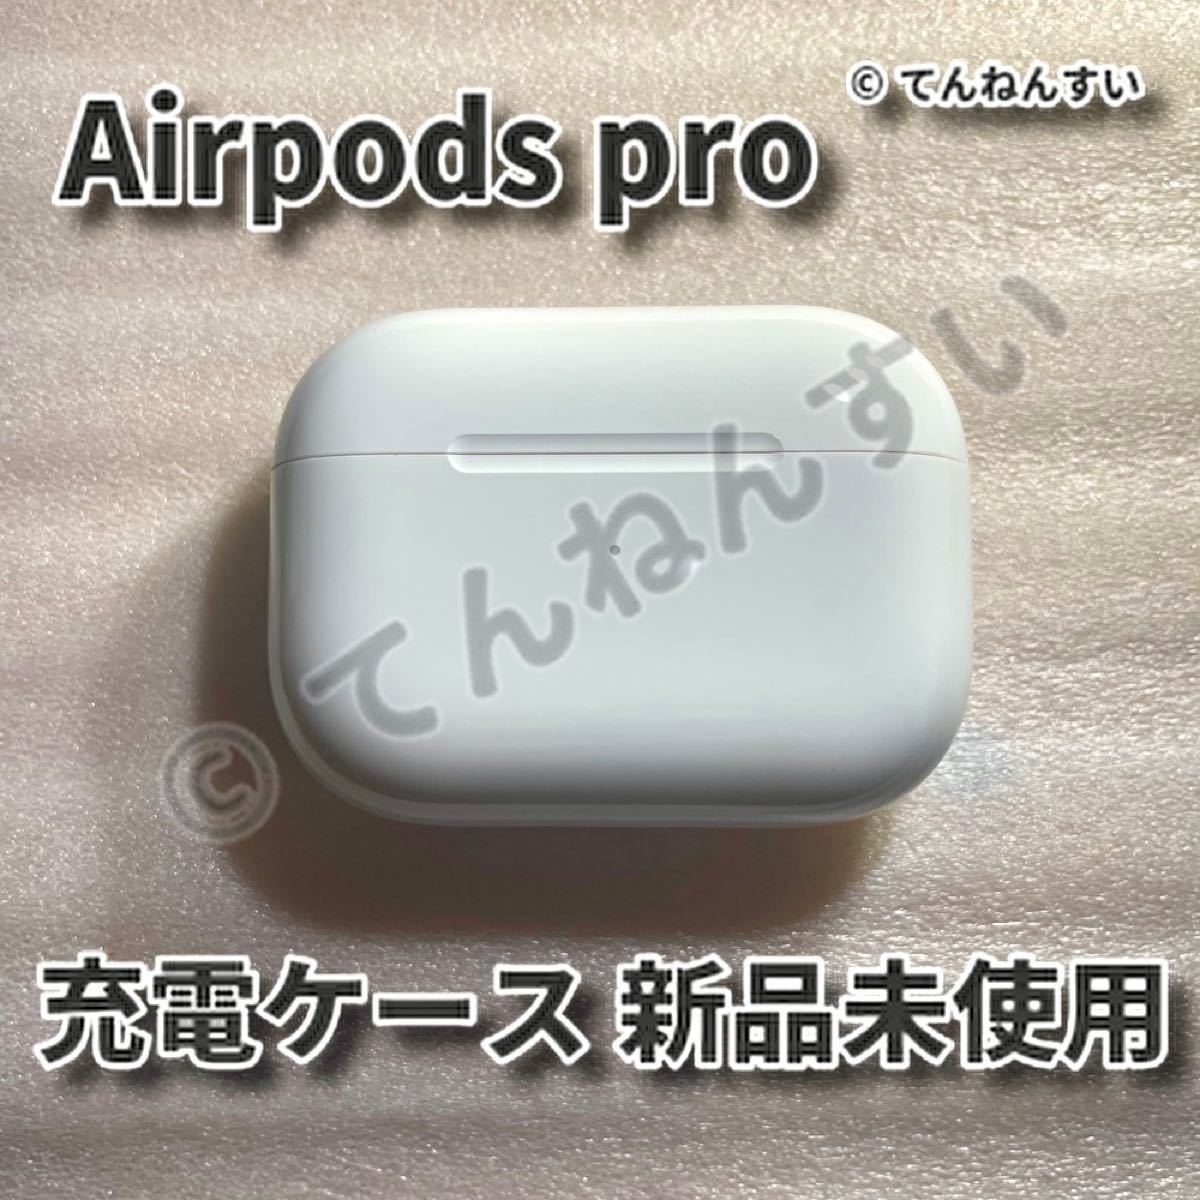 絶品 新品 エアーポッズ 第2世代 充電ケースのみ Apple AirPods 純正